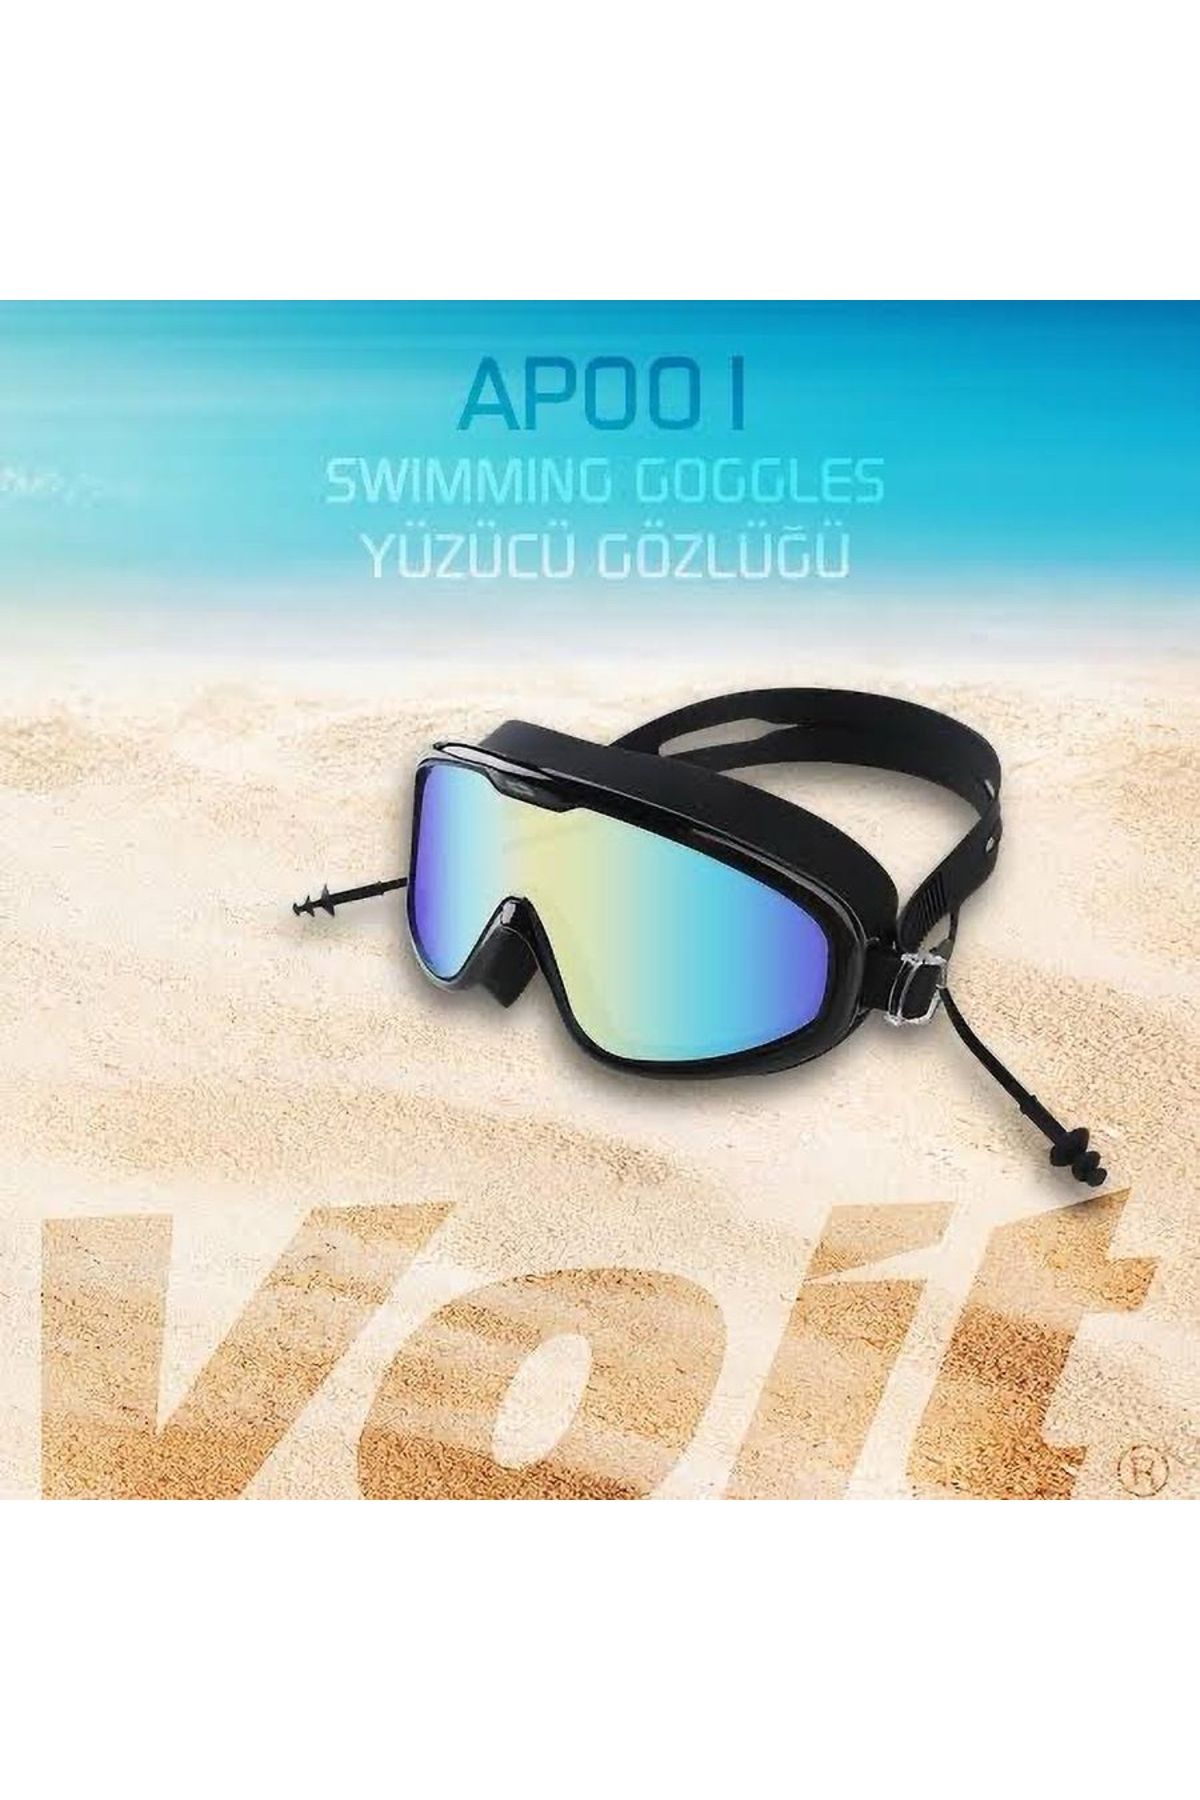 Voit AP001 Aynalı Yüzücü Gözlüğü - Kulak Tıkaçlı